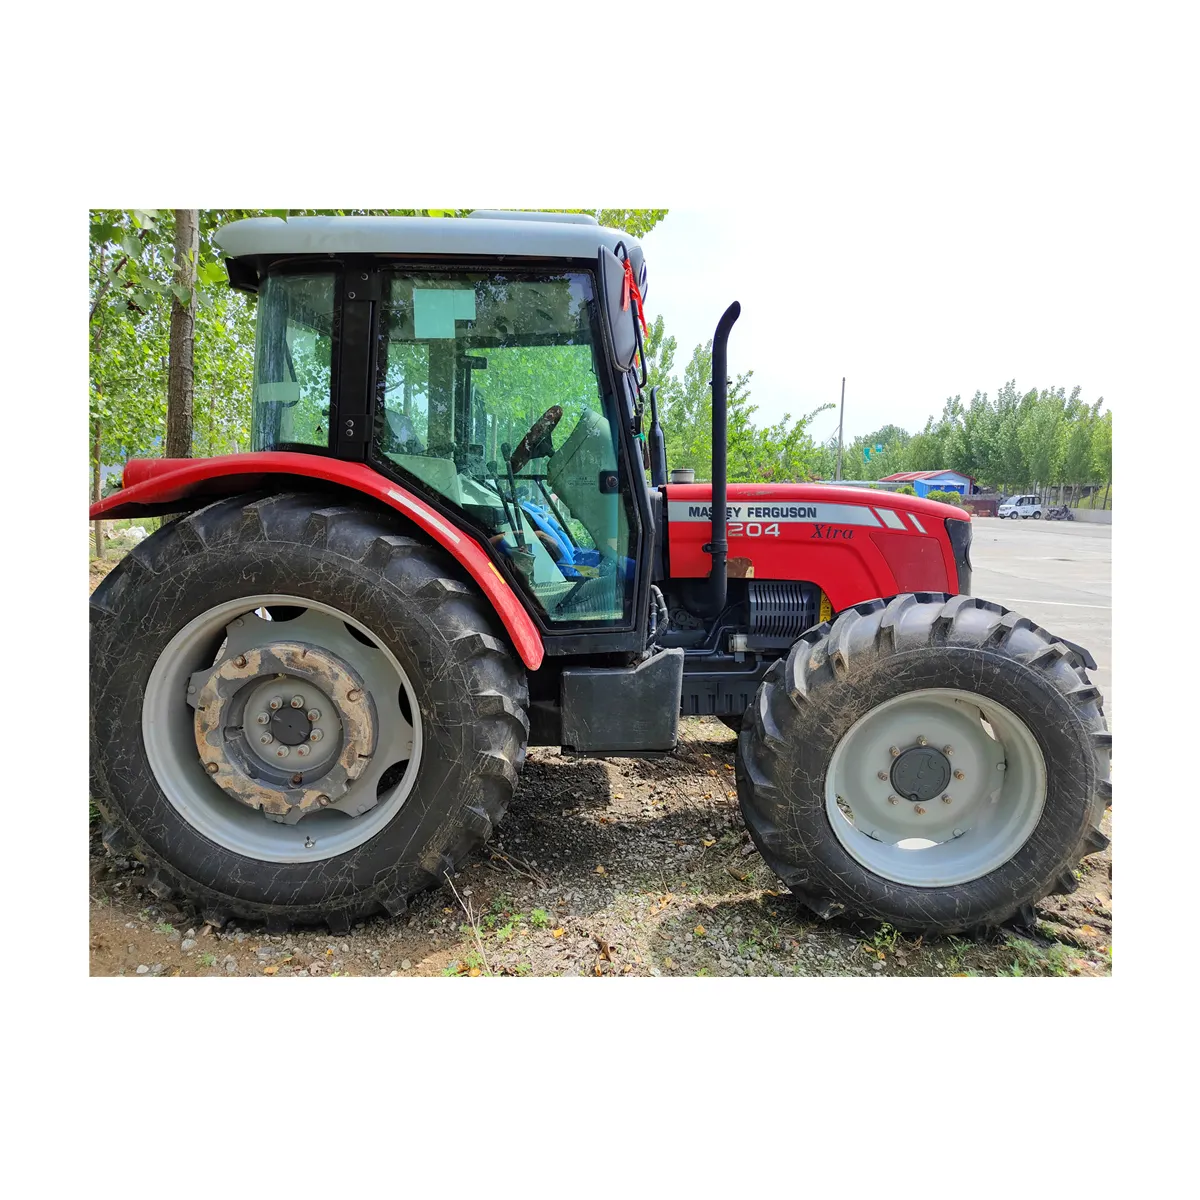 Tractor assey erguson 1004 1204 a Perú, Chile y Argentina, venta al por mayor